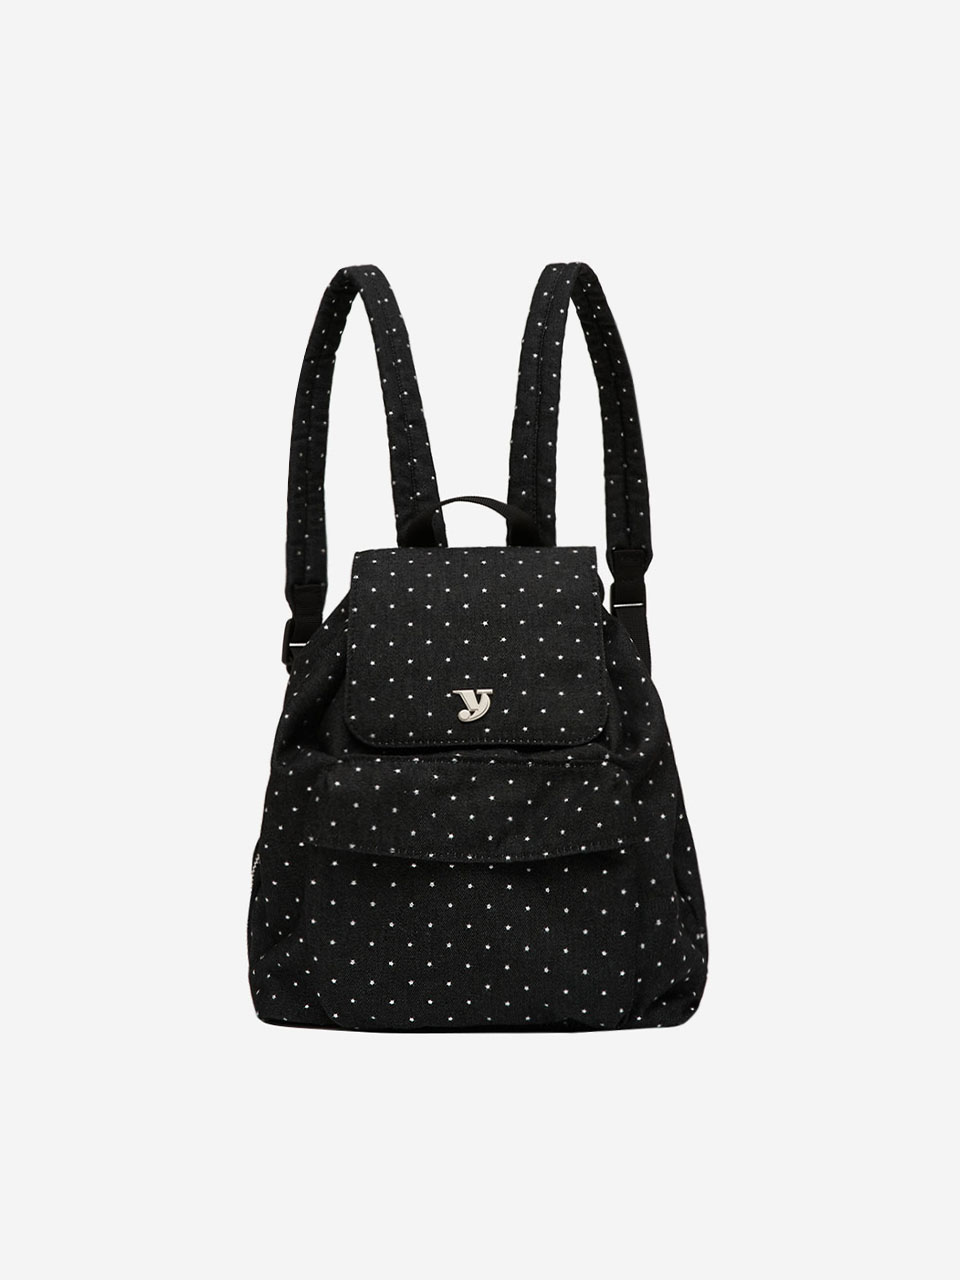 3/11 예약배송 mini day backpack (star black)